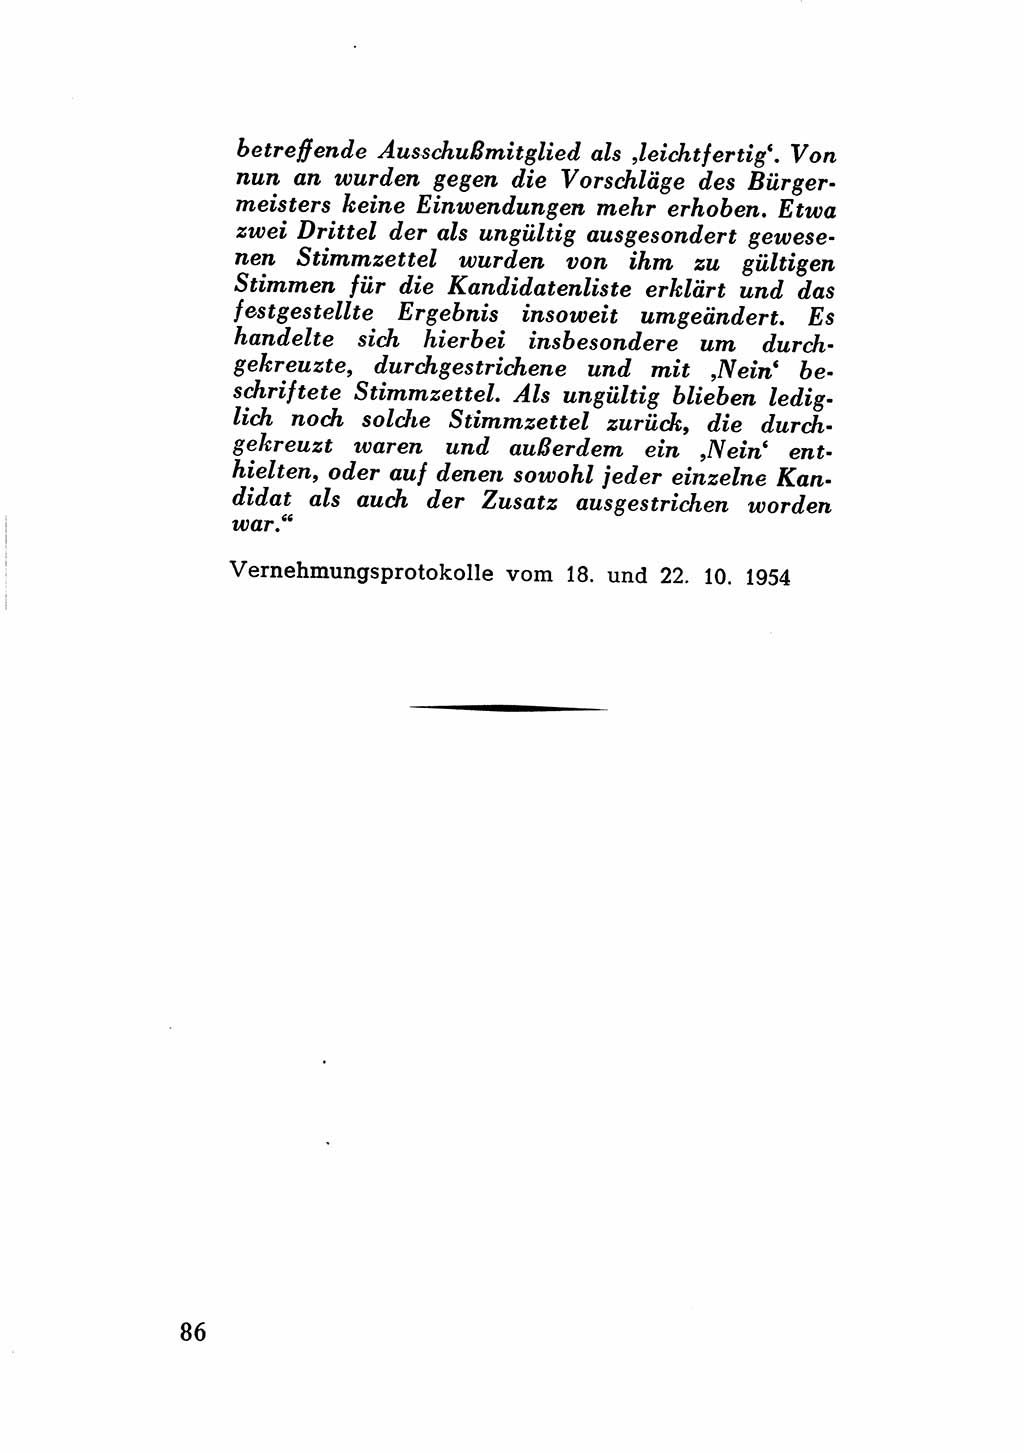 Katalog des Unrechts, Untersuchungsausschuß Freiheitlicher Juristen (UfJ) [Bundesrepublik Deutschland (BRD)] 1956, Seite 86 (Kat. UnR. UfJ BRD 1956, S. 86)